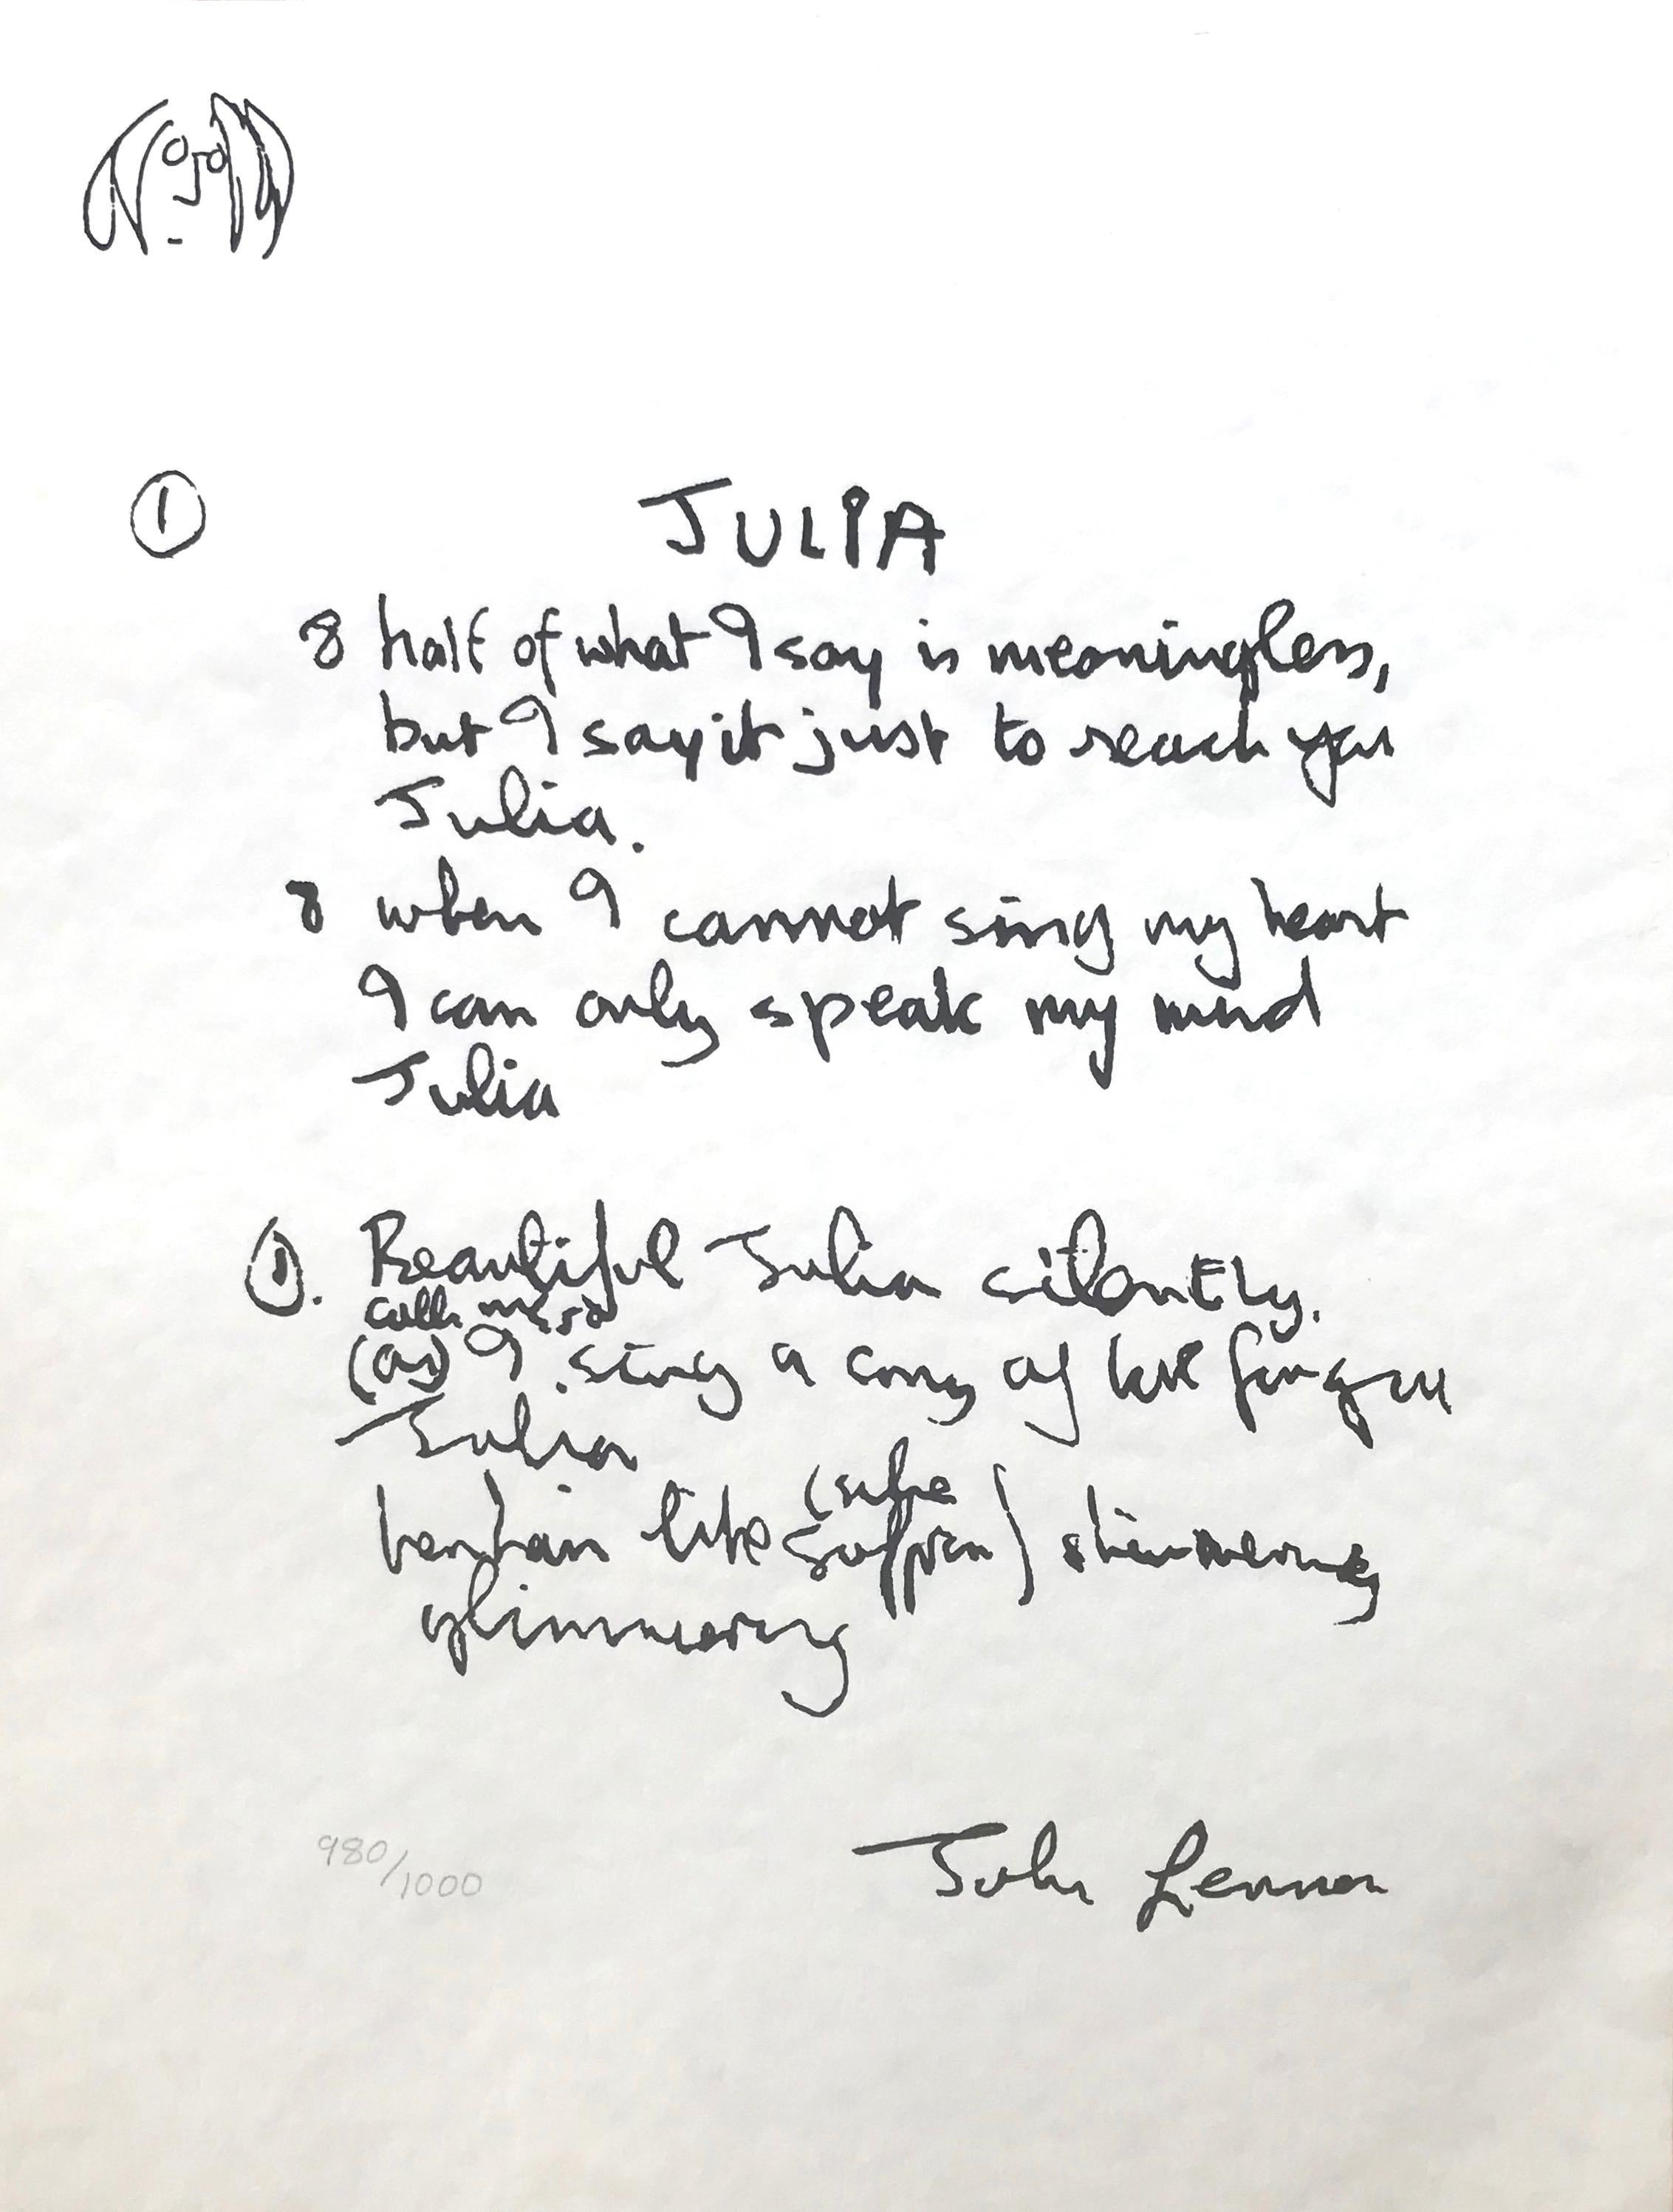 John Lennon Print - "Julia" Limited Edition Hand Written Lyrics